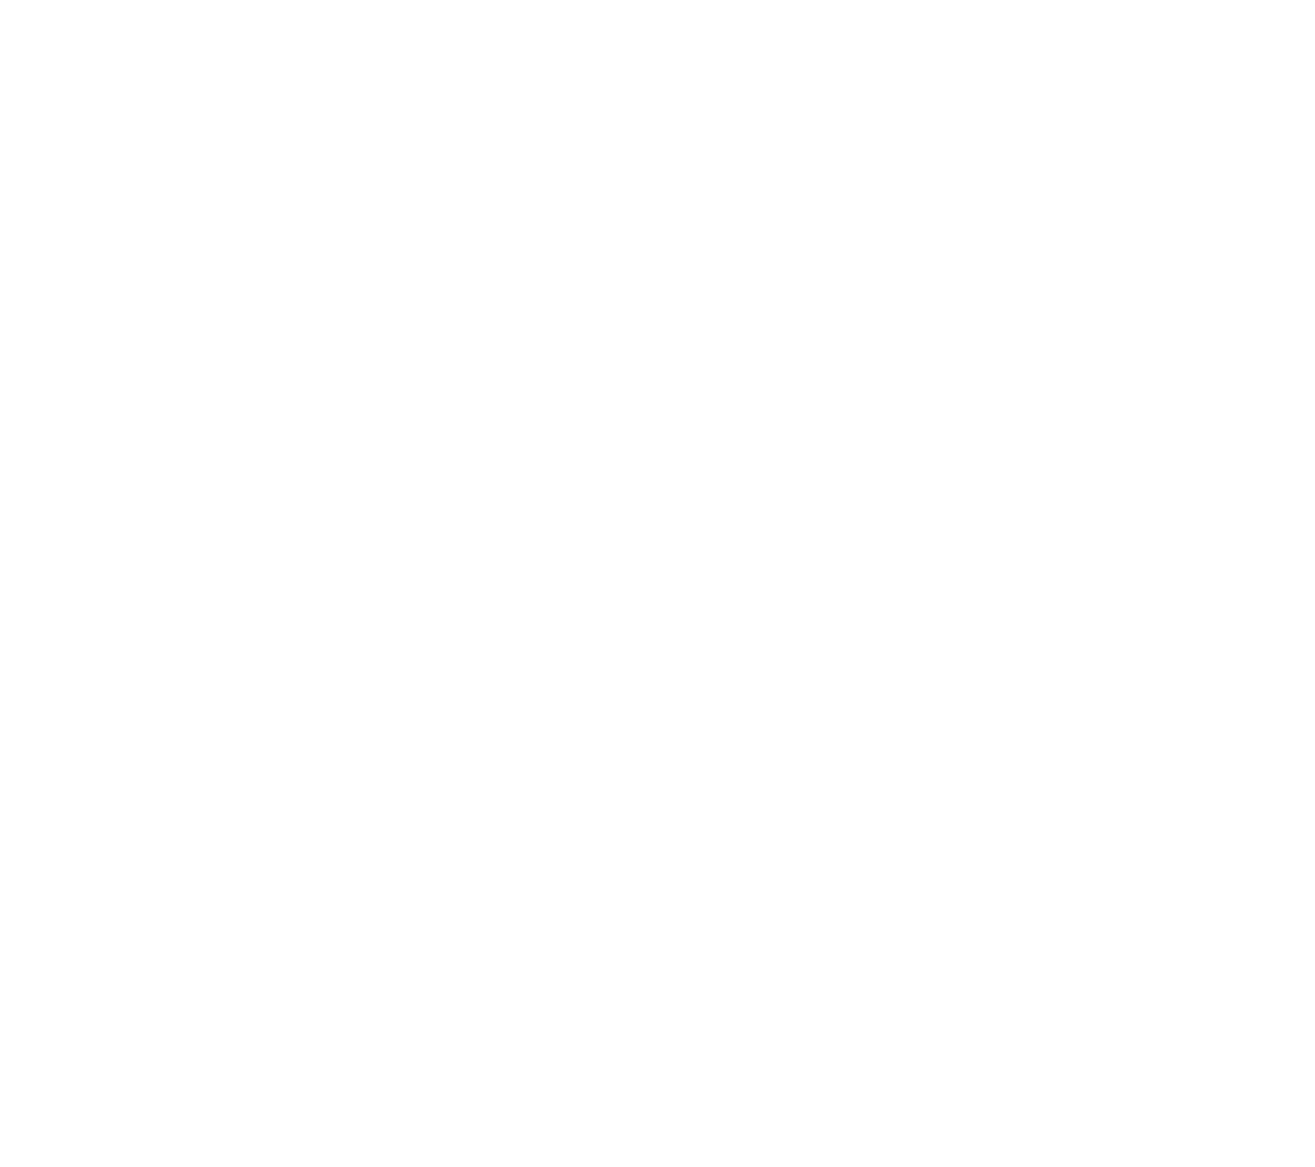 WeiÃŸer Schriftzug auf bleuen untergrund: BjÃ¶rn Becker der Innobilienbewerter